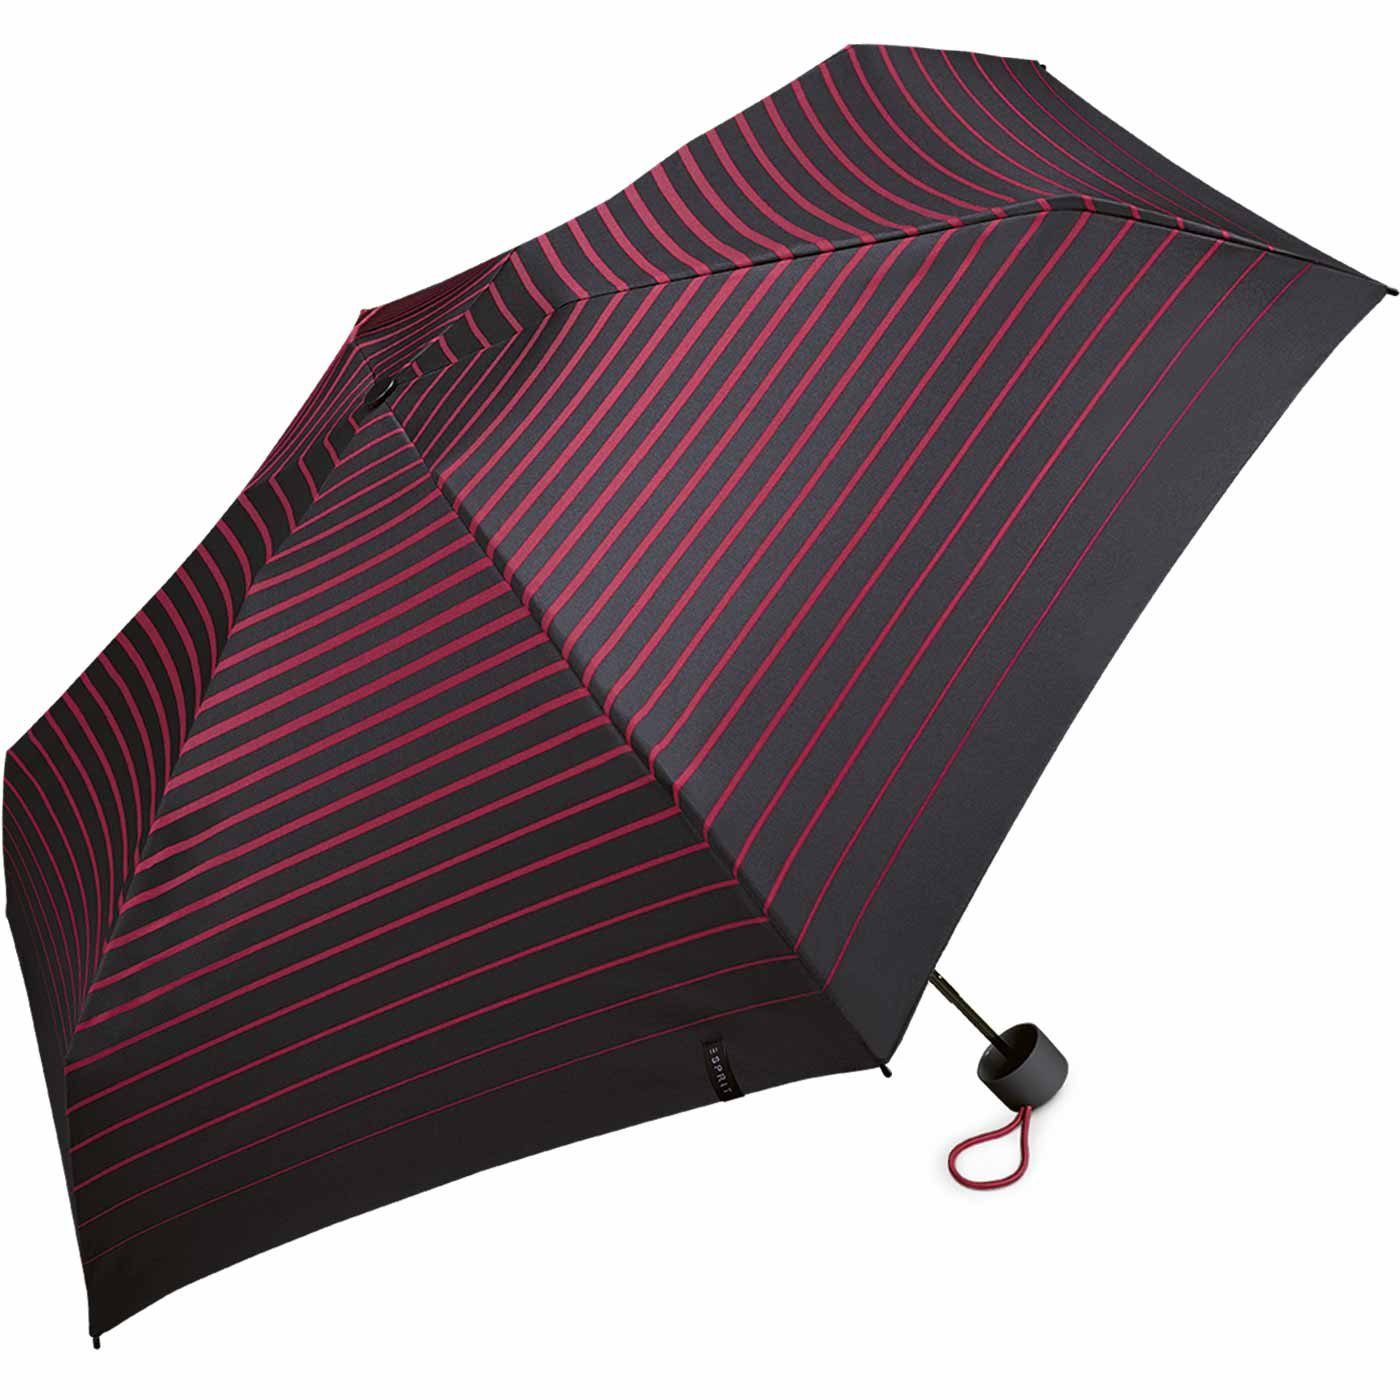 Esprit Taschenregenschirm Damen Degradee winzig pink, Petito Mini klein, - moderner - Streifen-Optik schwarz-pink in Stripe vivacious Super